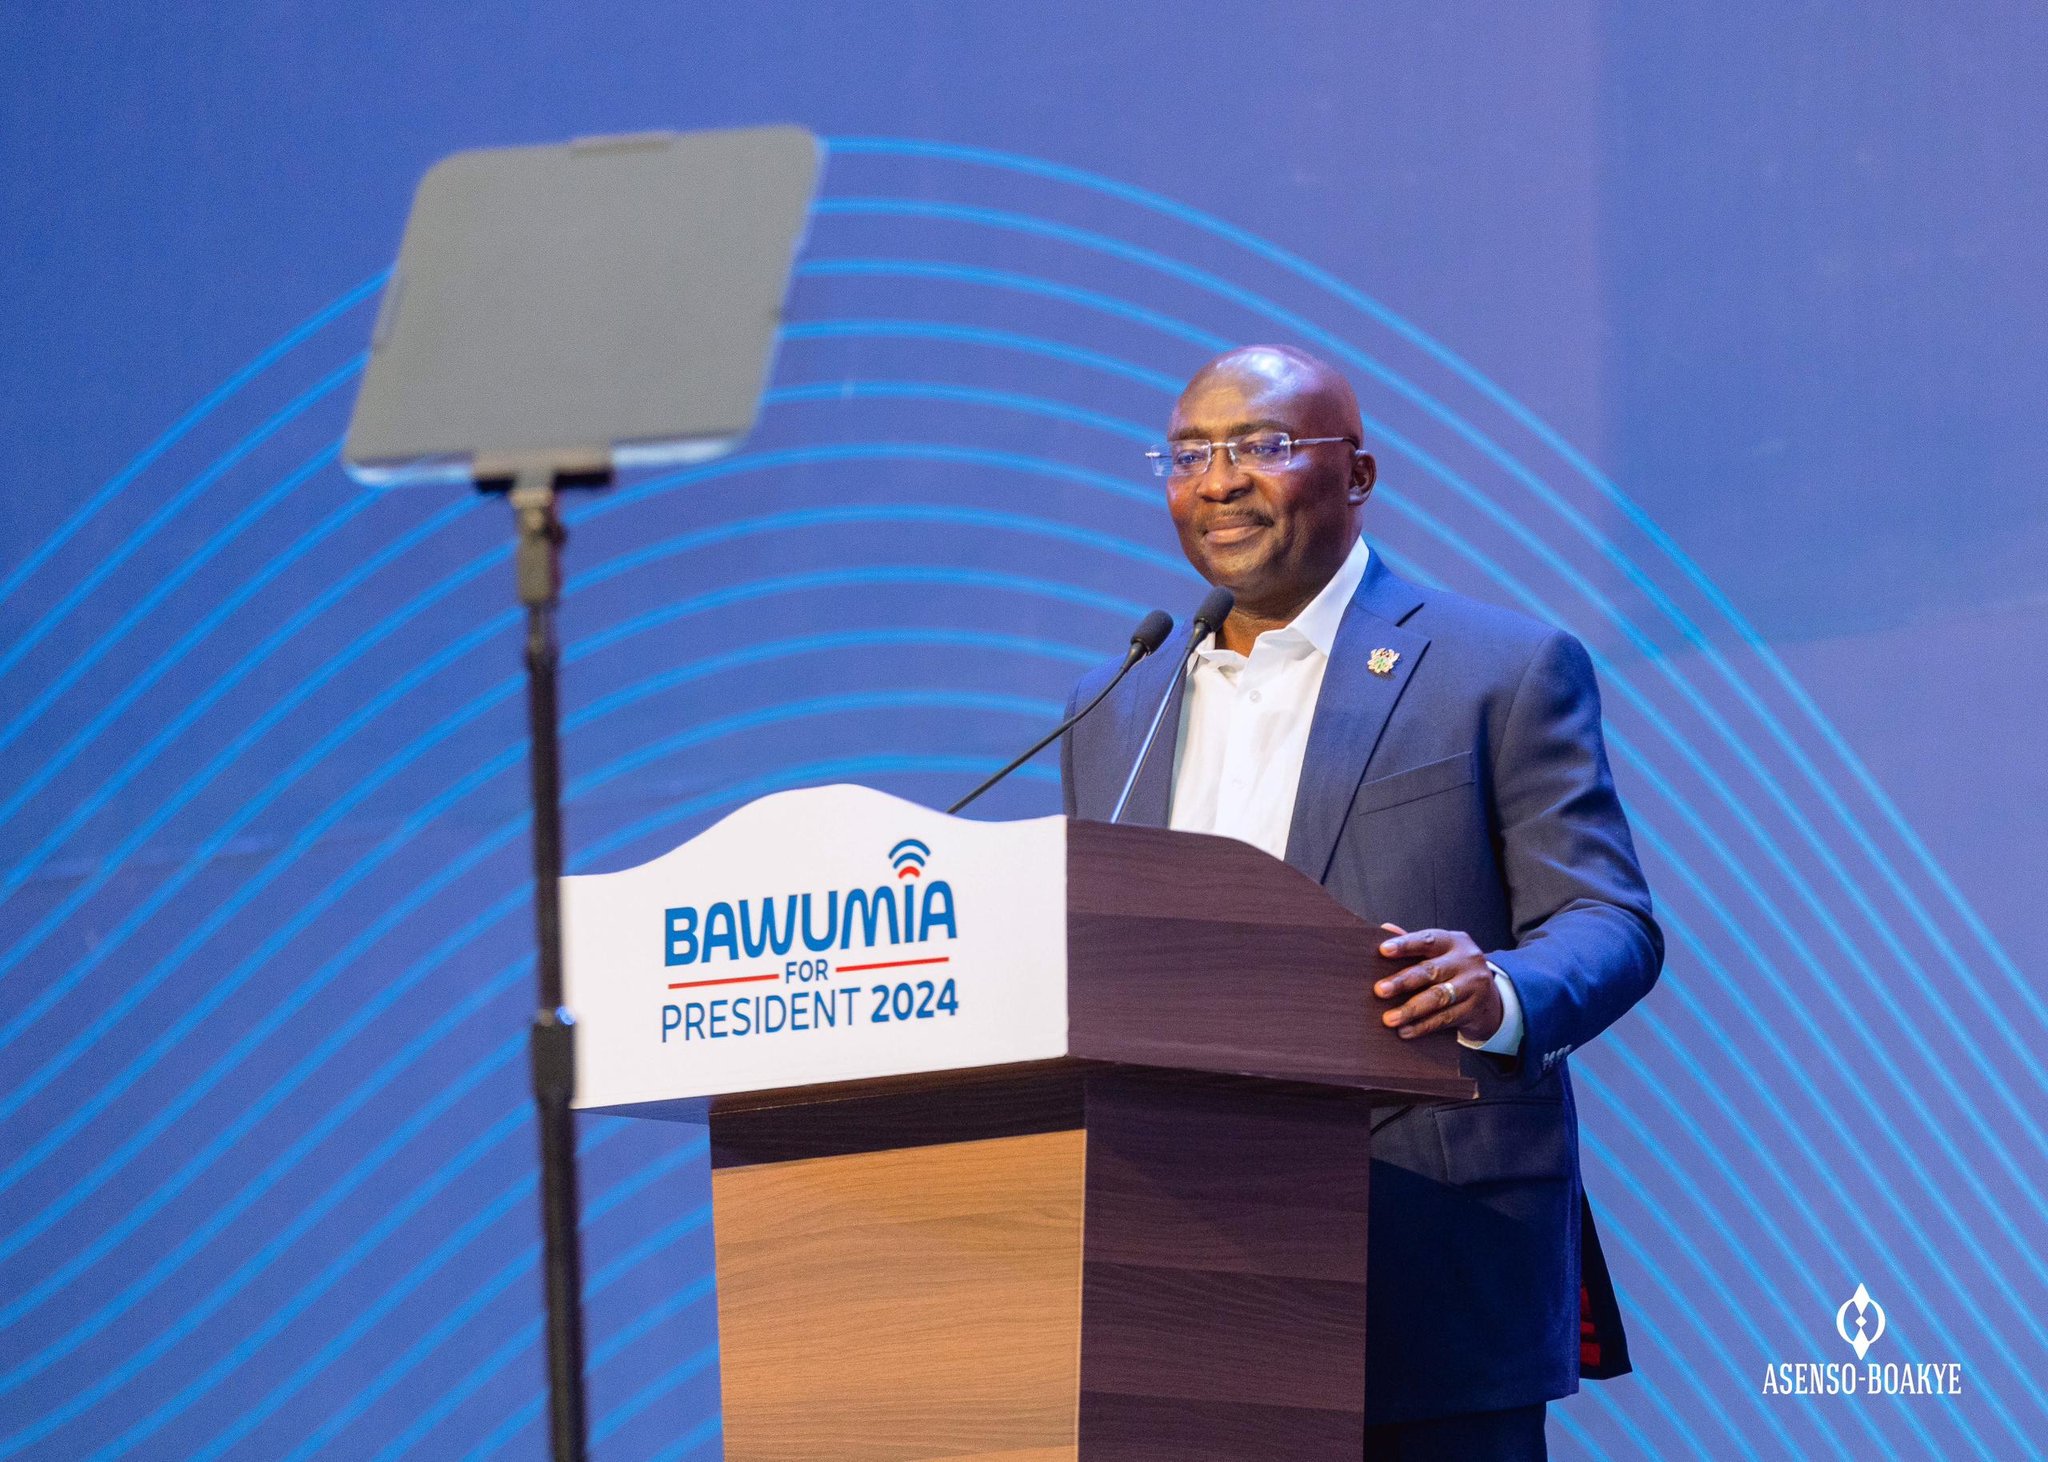 Dr Mahamudu Bawumia